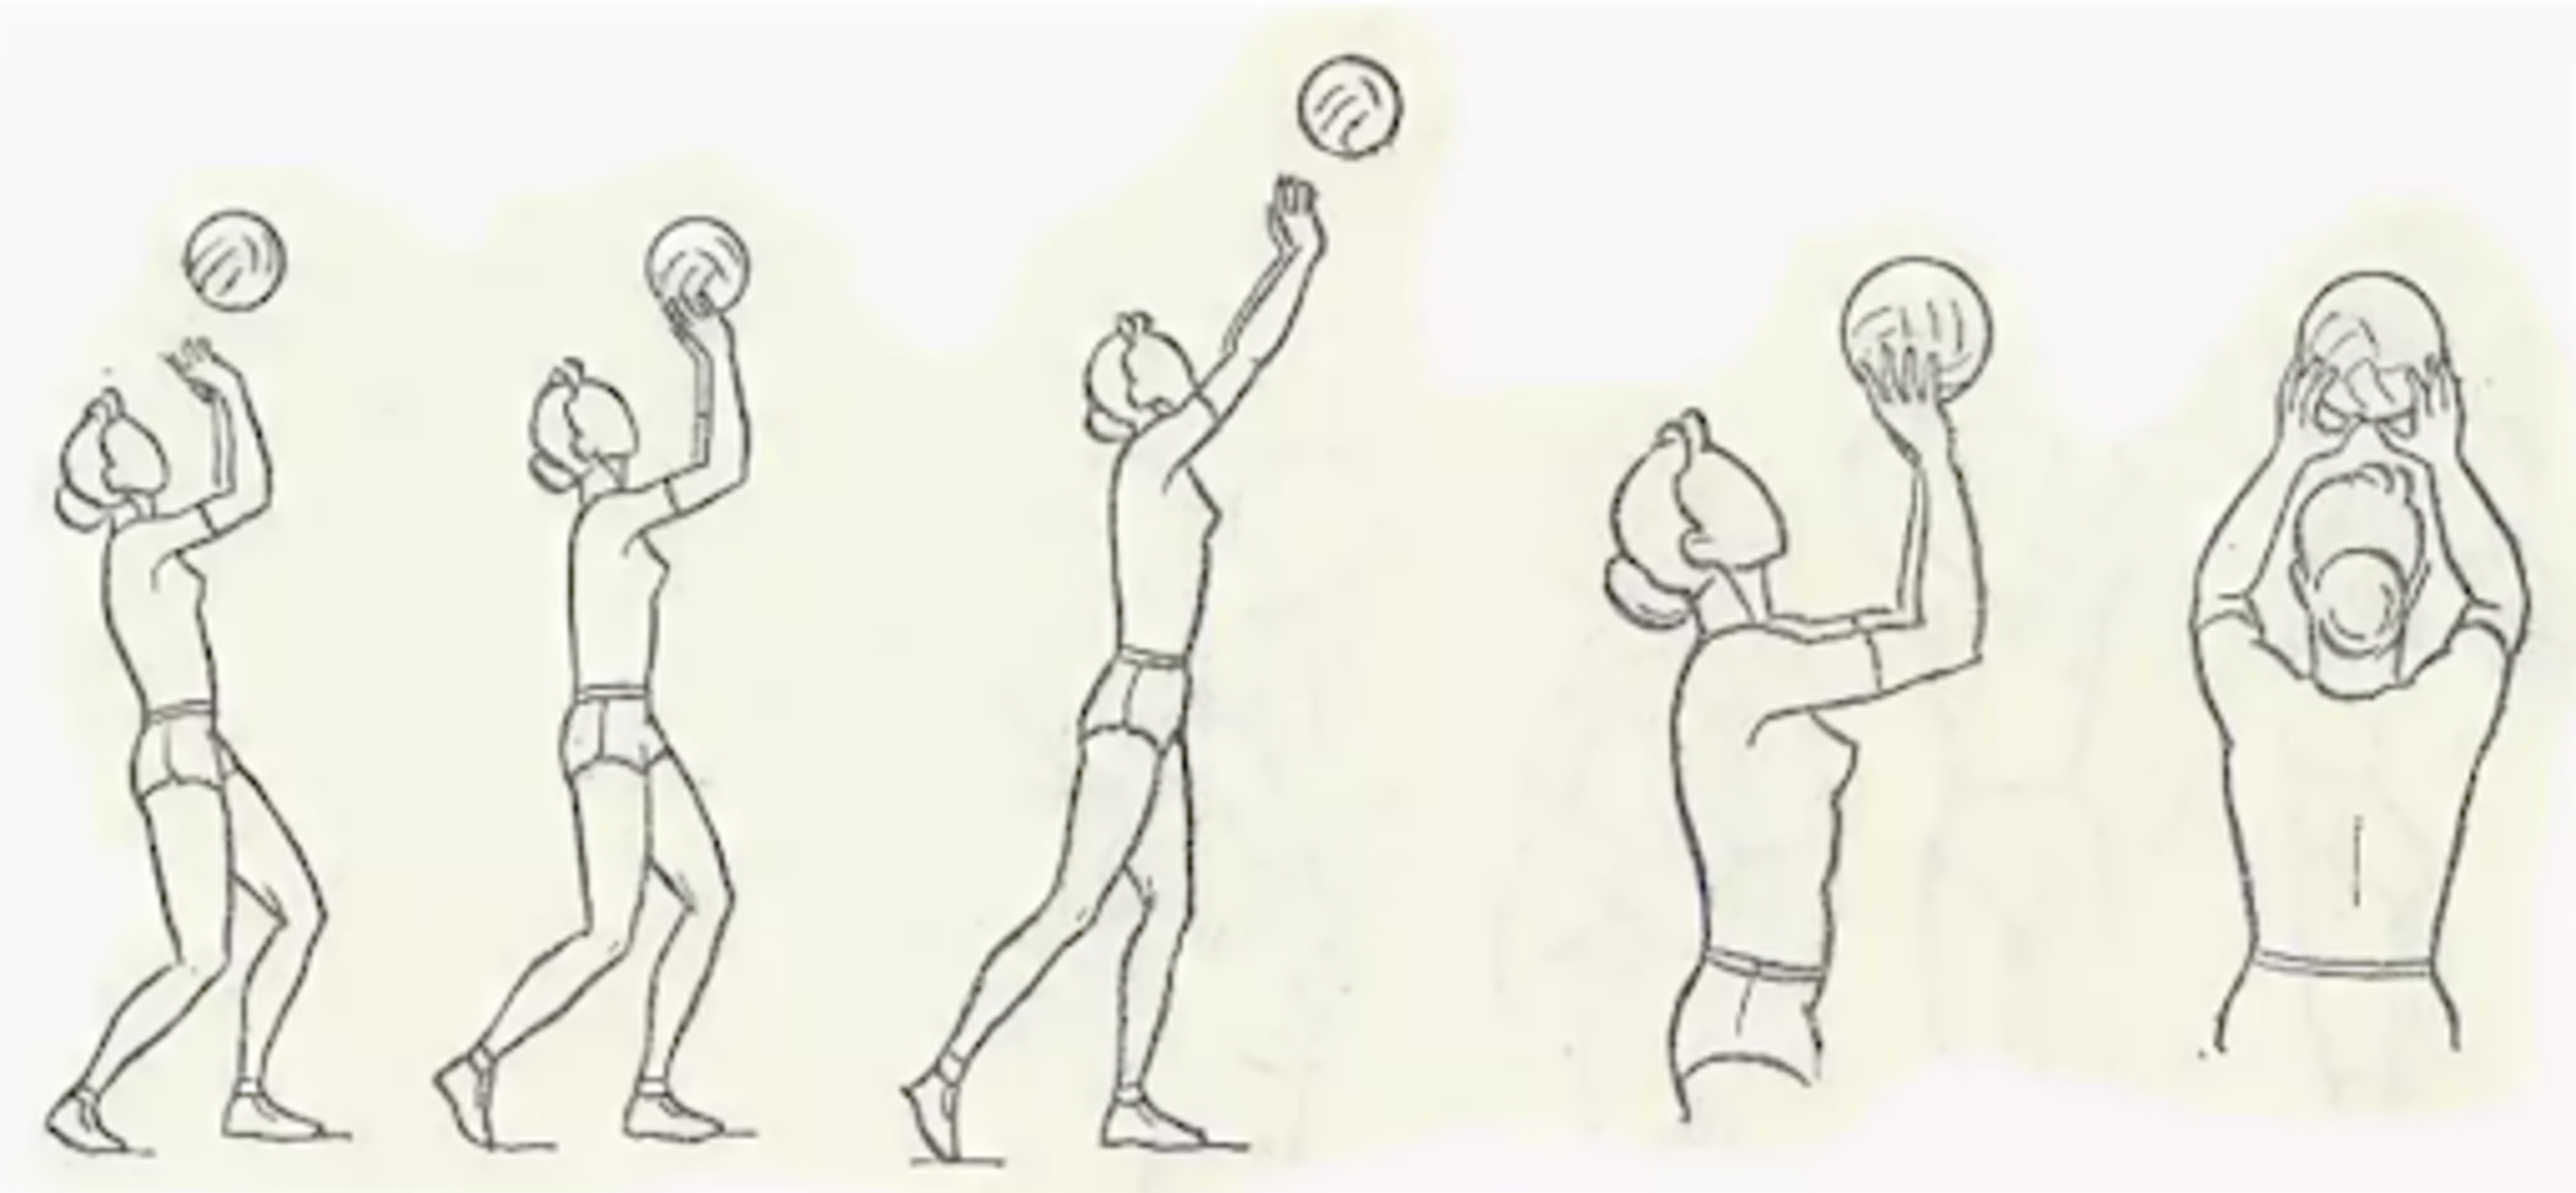 Передача двумя руками сверху в волейболе